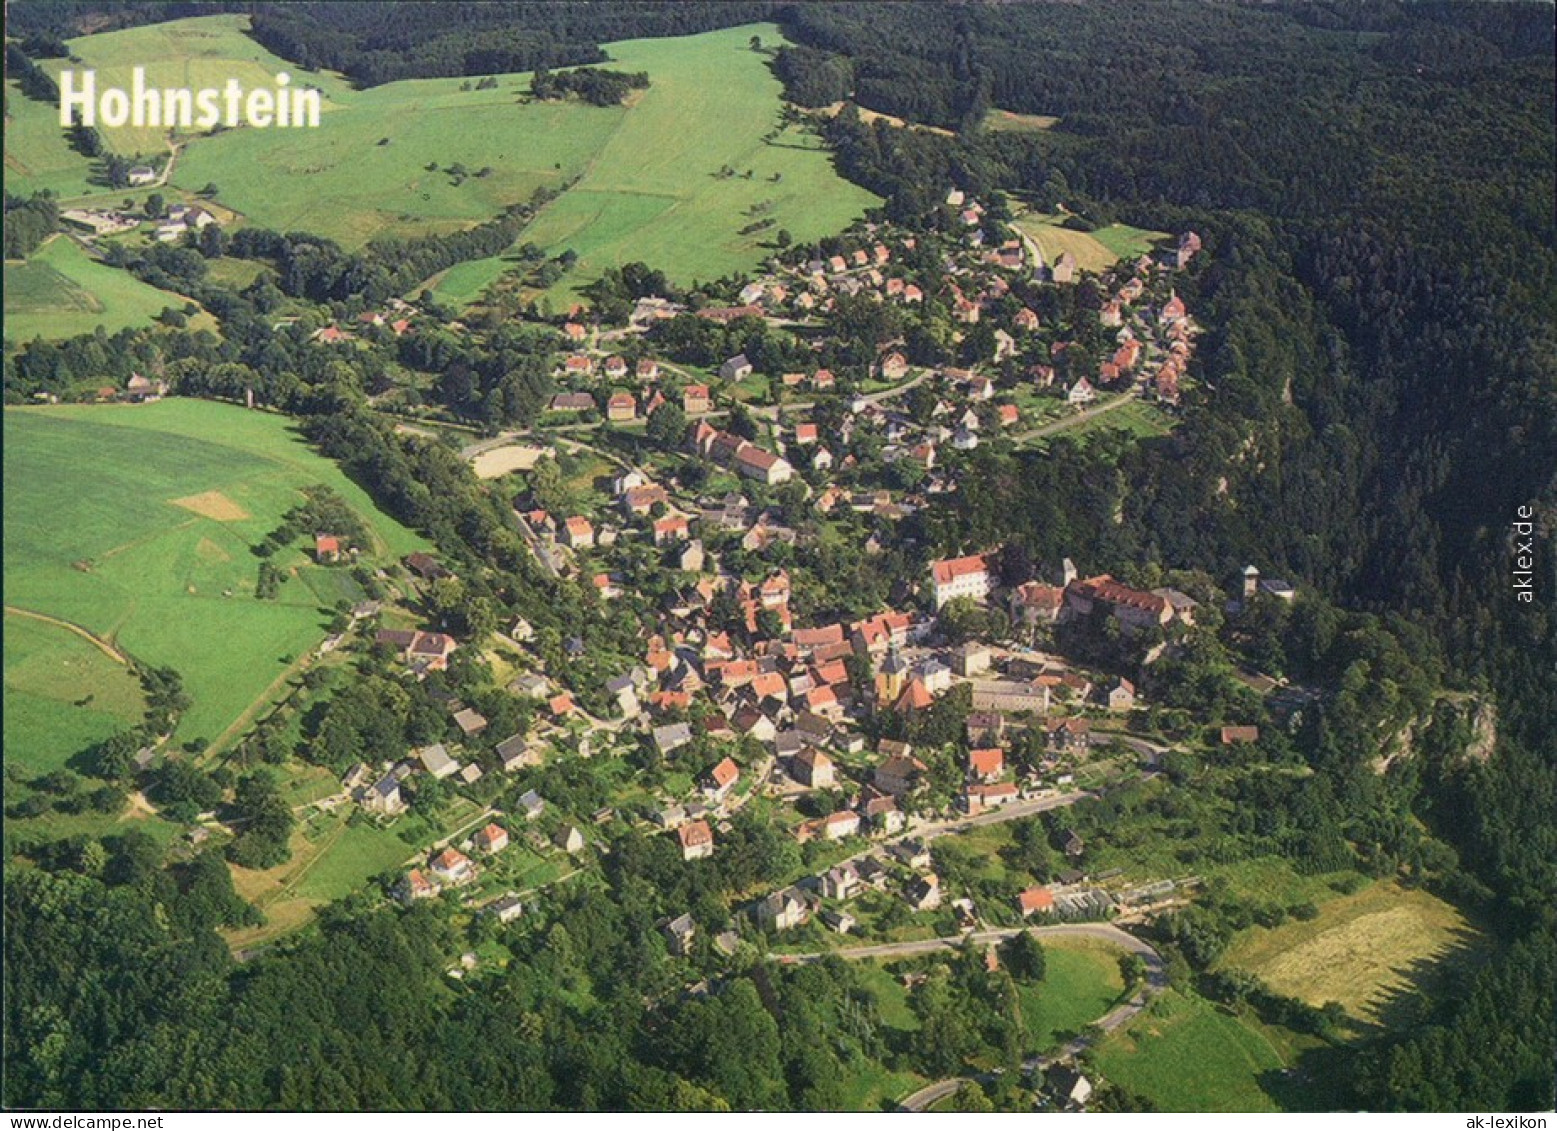 Ansichtskarte Hohnstein (Sächs. Schweiz) Luftbild 1994 - Hohnstein (Saechs. Schweiz)